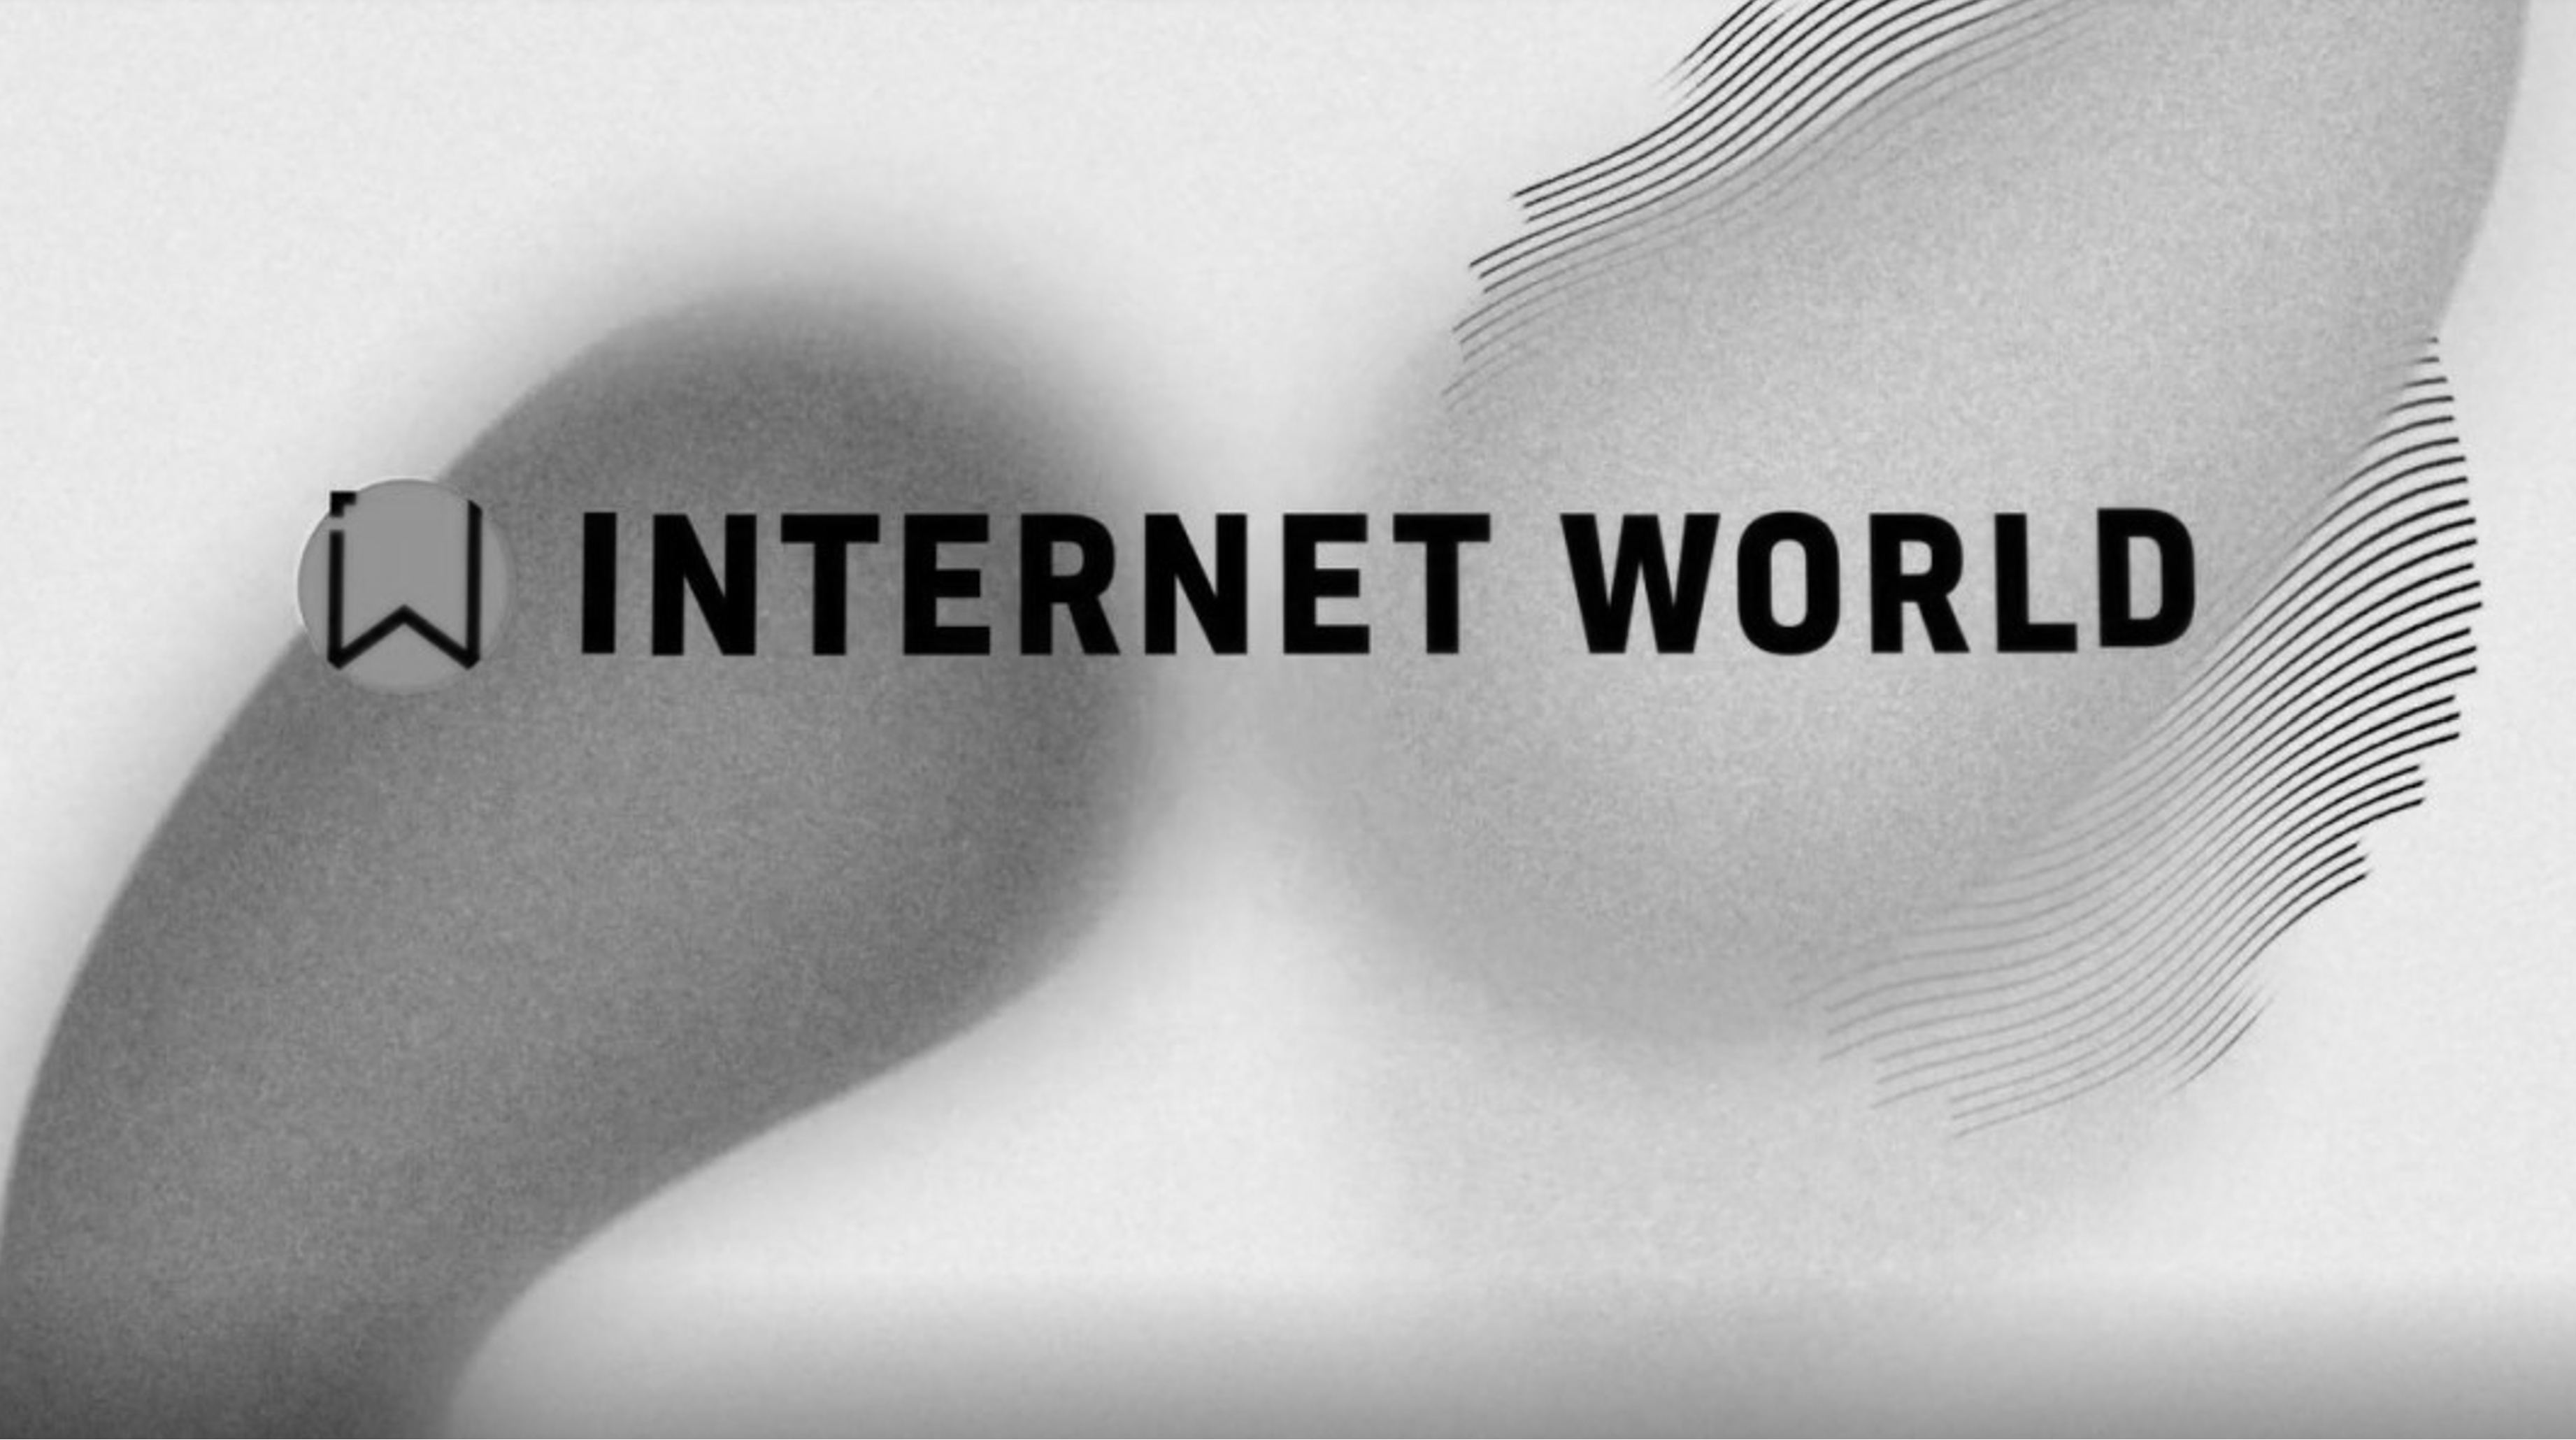 INTERNET WORLD wird eingestellt